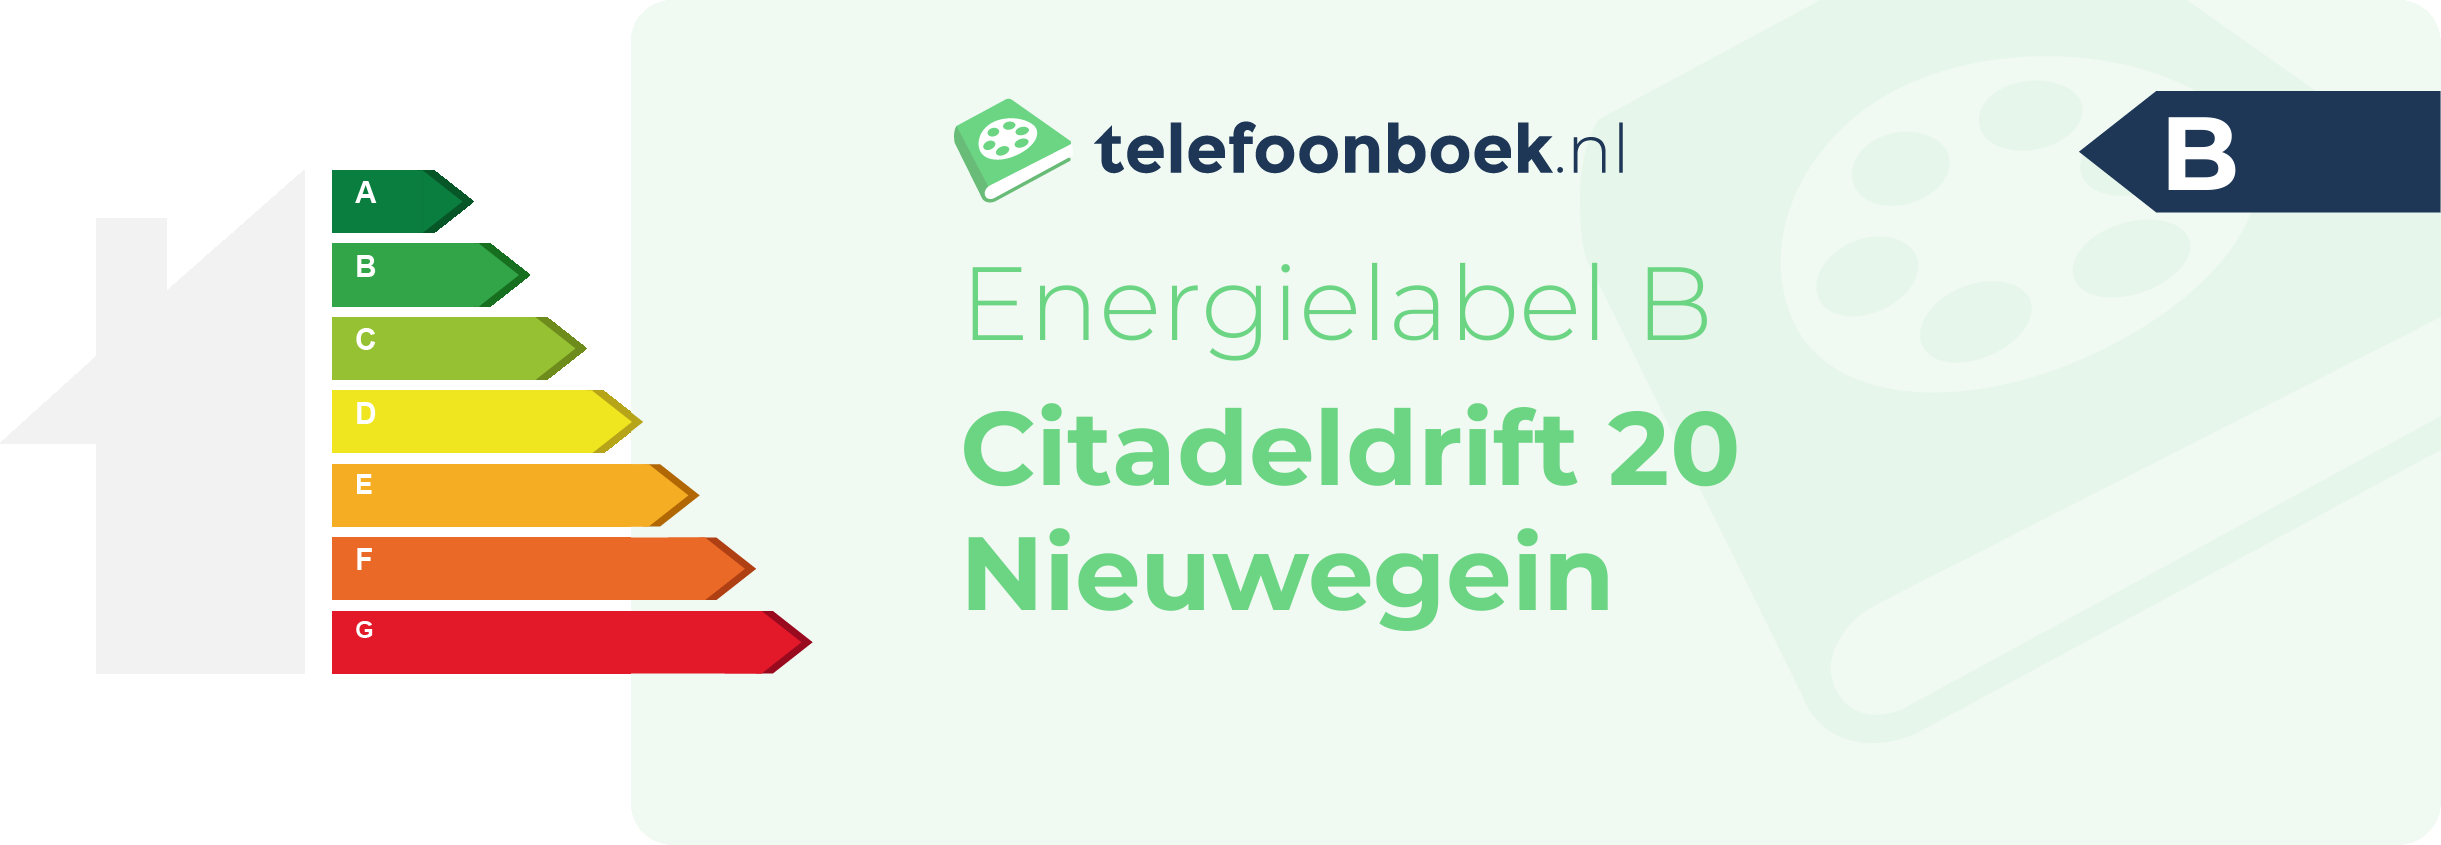 Energielabel Citadeldrift 20 Nieuwegein